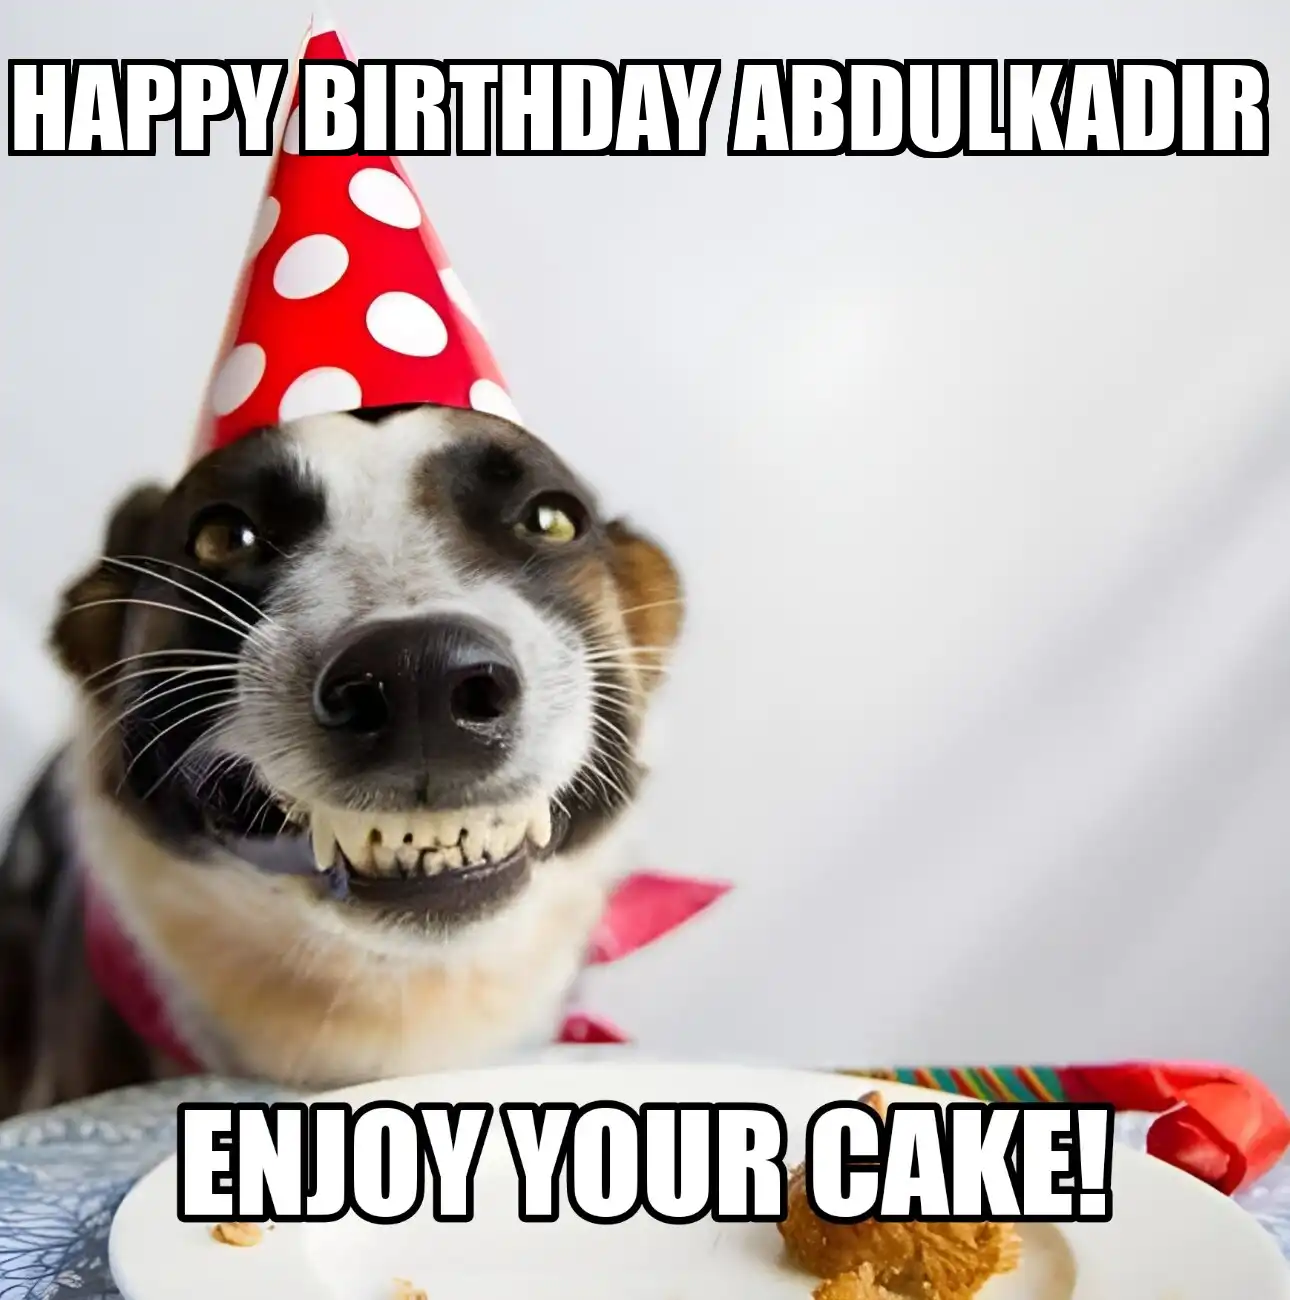 Happy Birthday Abdulkadir Enjoy Your Cake Dog Meme